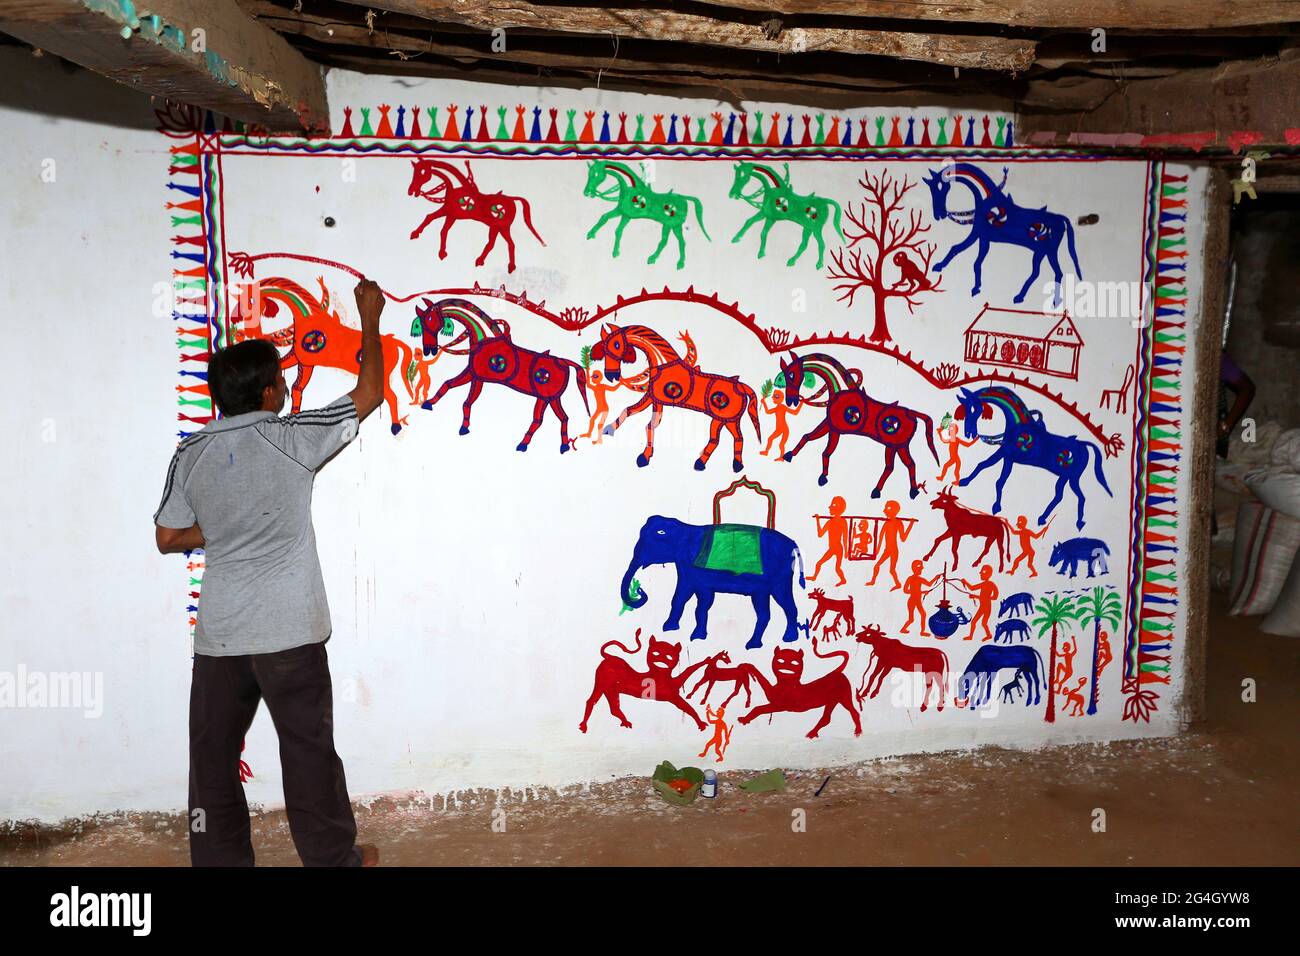 RATHAWA TRIBÙ artisti tribali disegnando Pithora pittura su un muro di fango all'interno di una casa. I dipinti di Pithora sono altamente arricchiti cultura d'arte popolare del Gujarat Foto Stock